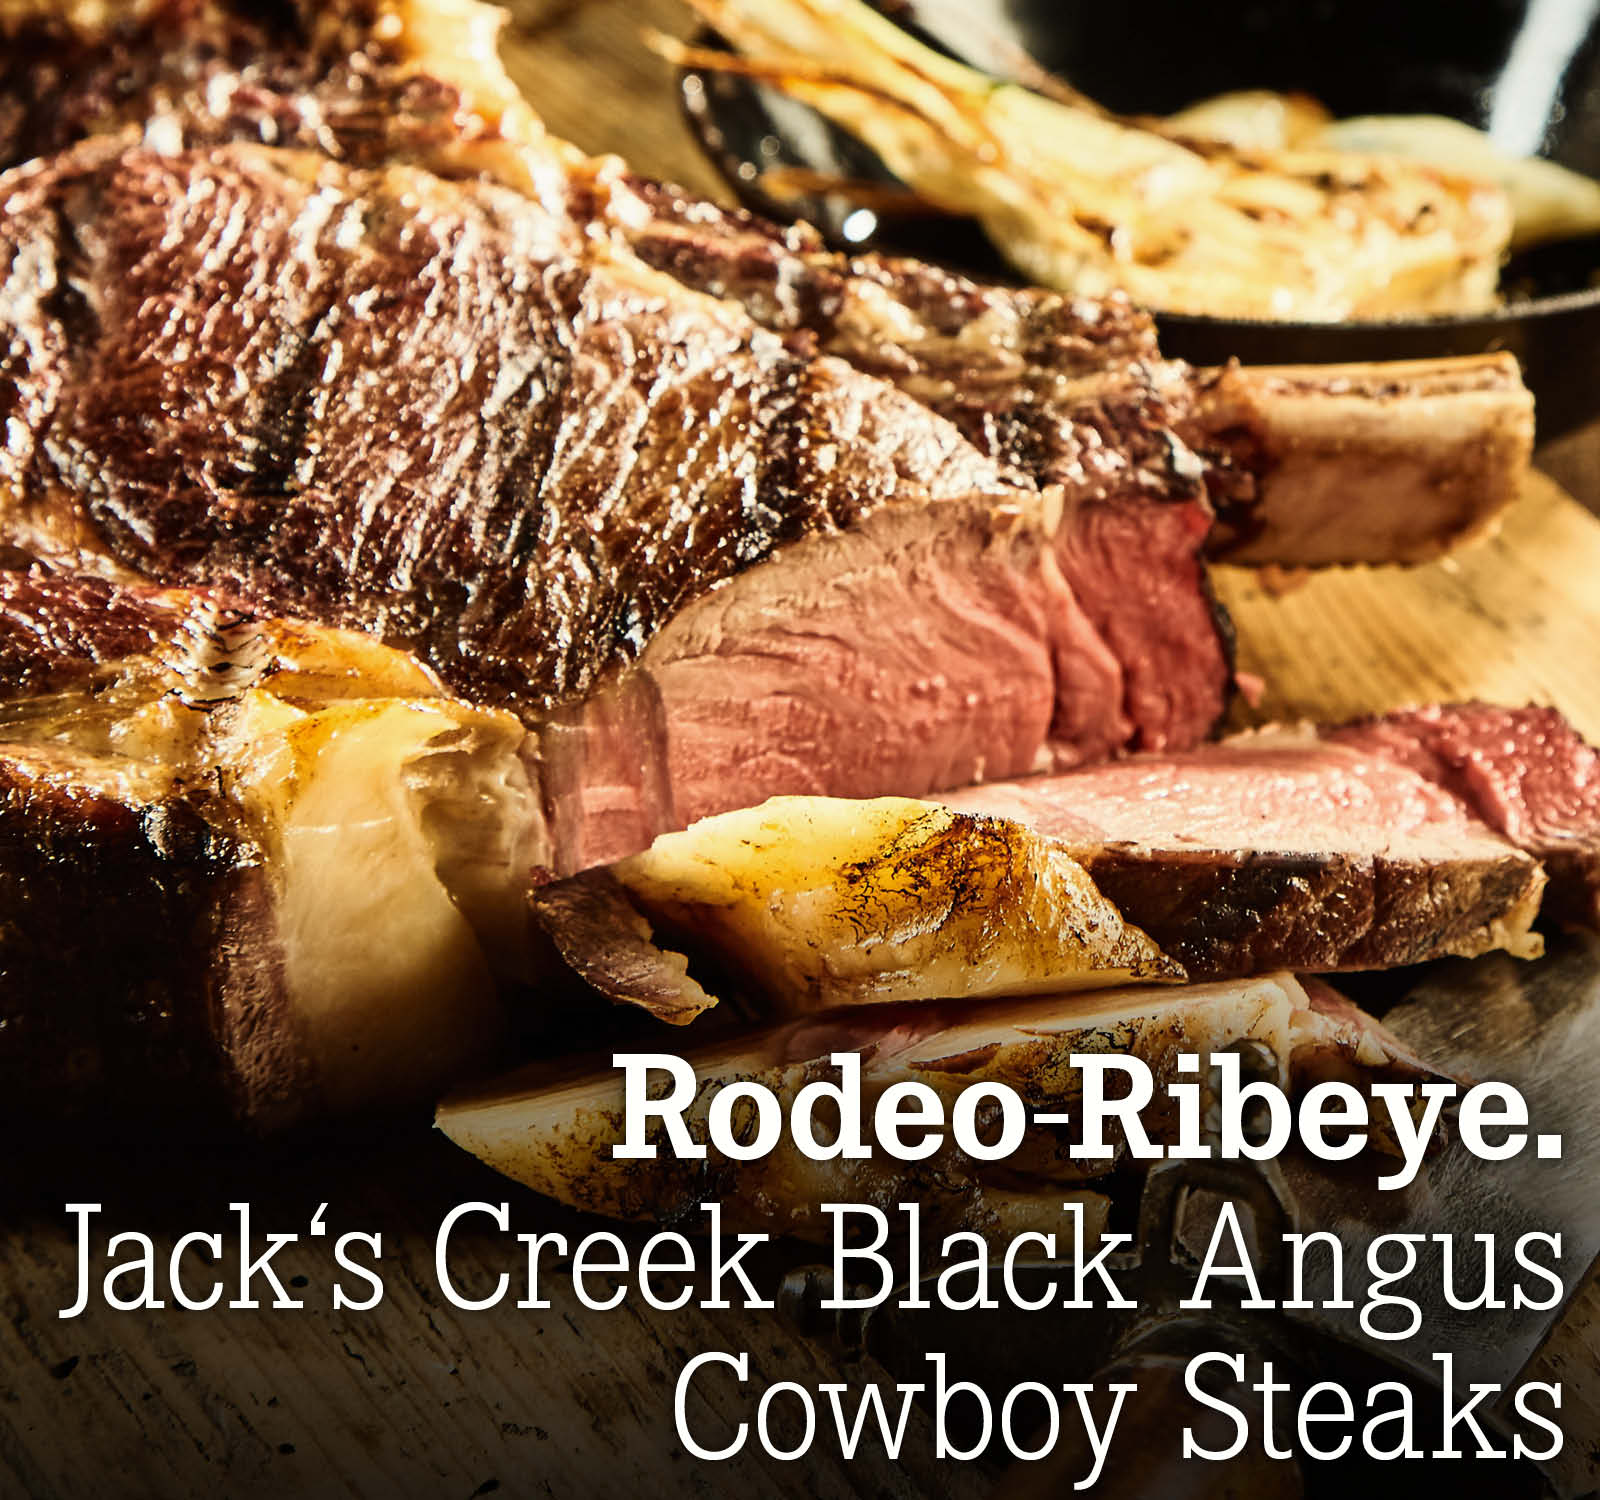 Rodeo-Ribeye. Jack's Creek Black Angus Cowboy Steaks